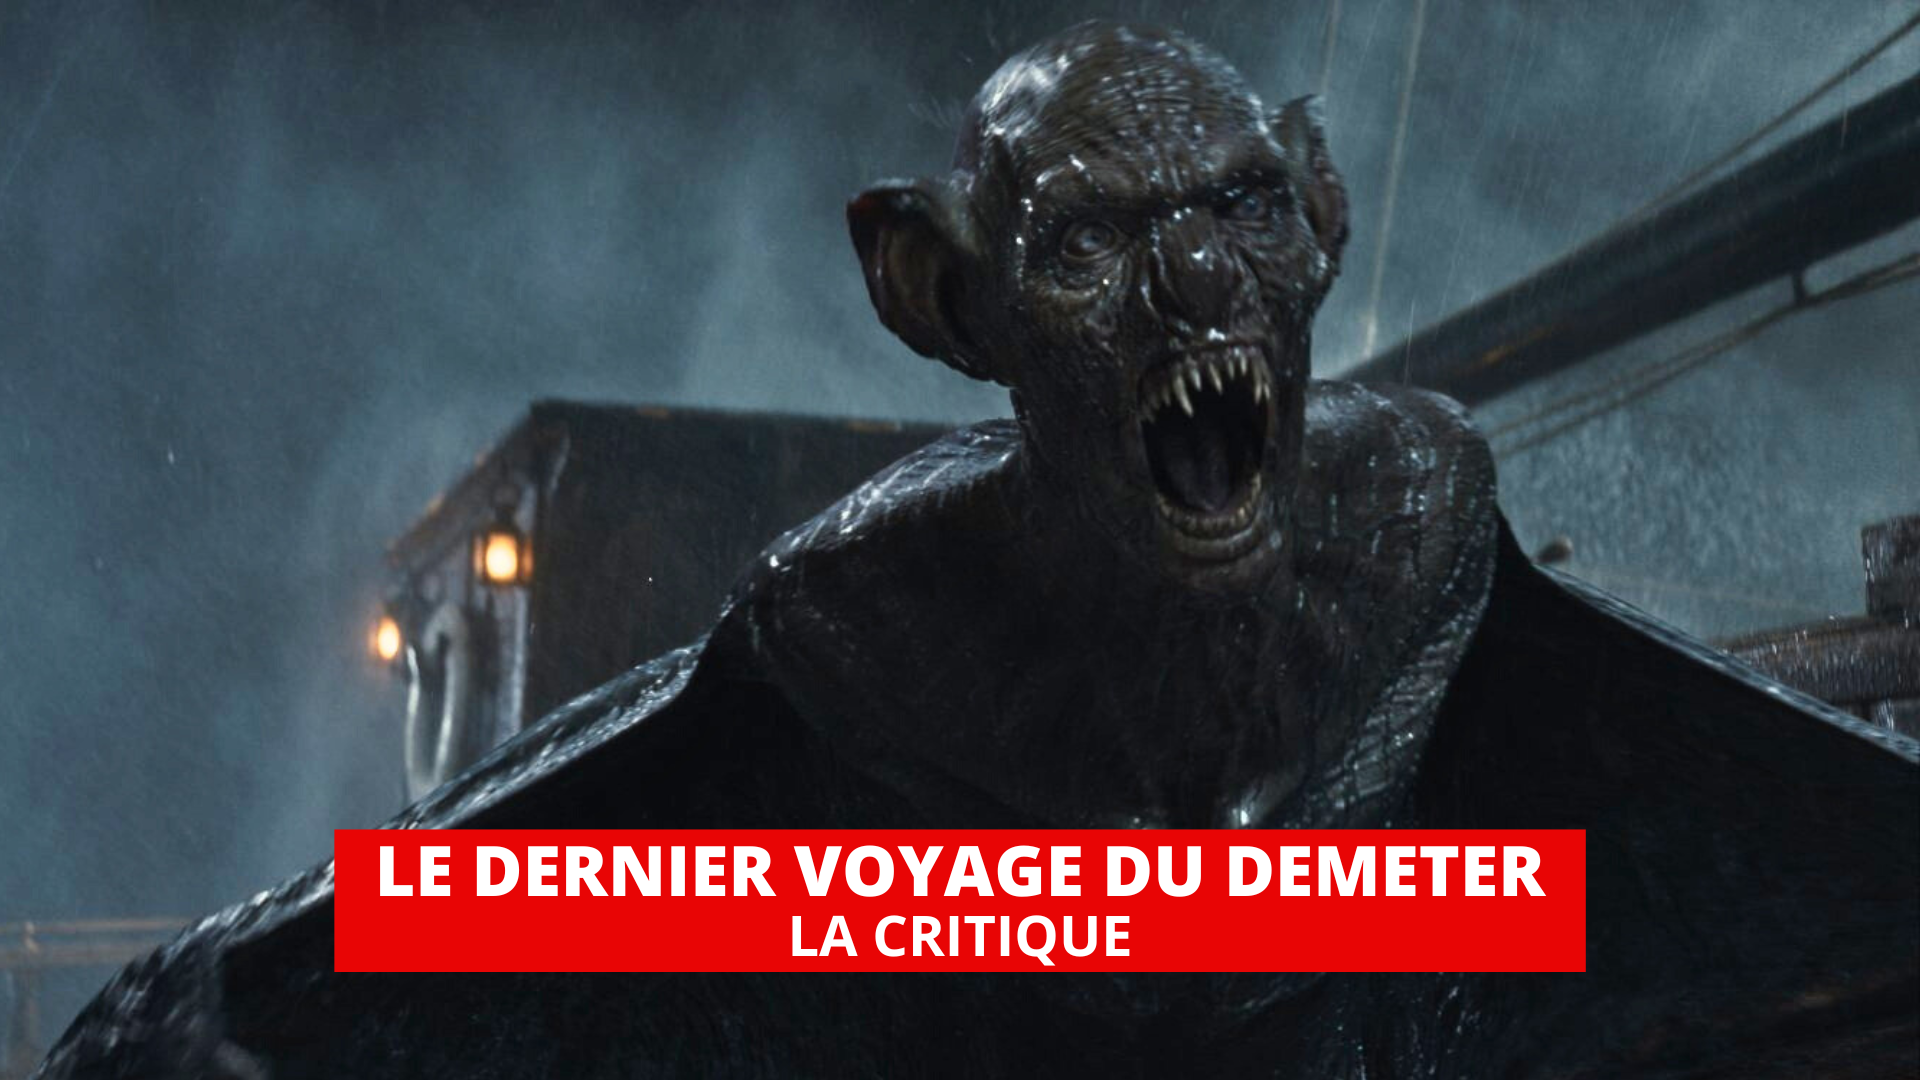 Le Dernier voyage du Demeter : Dracula de retour dans un film respectueux du mythe